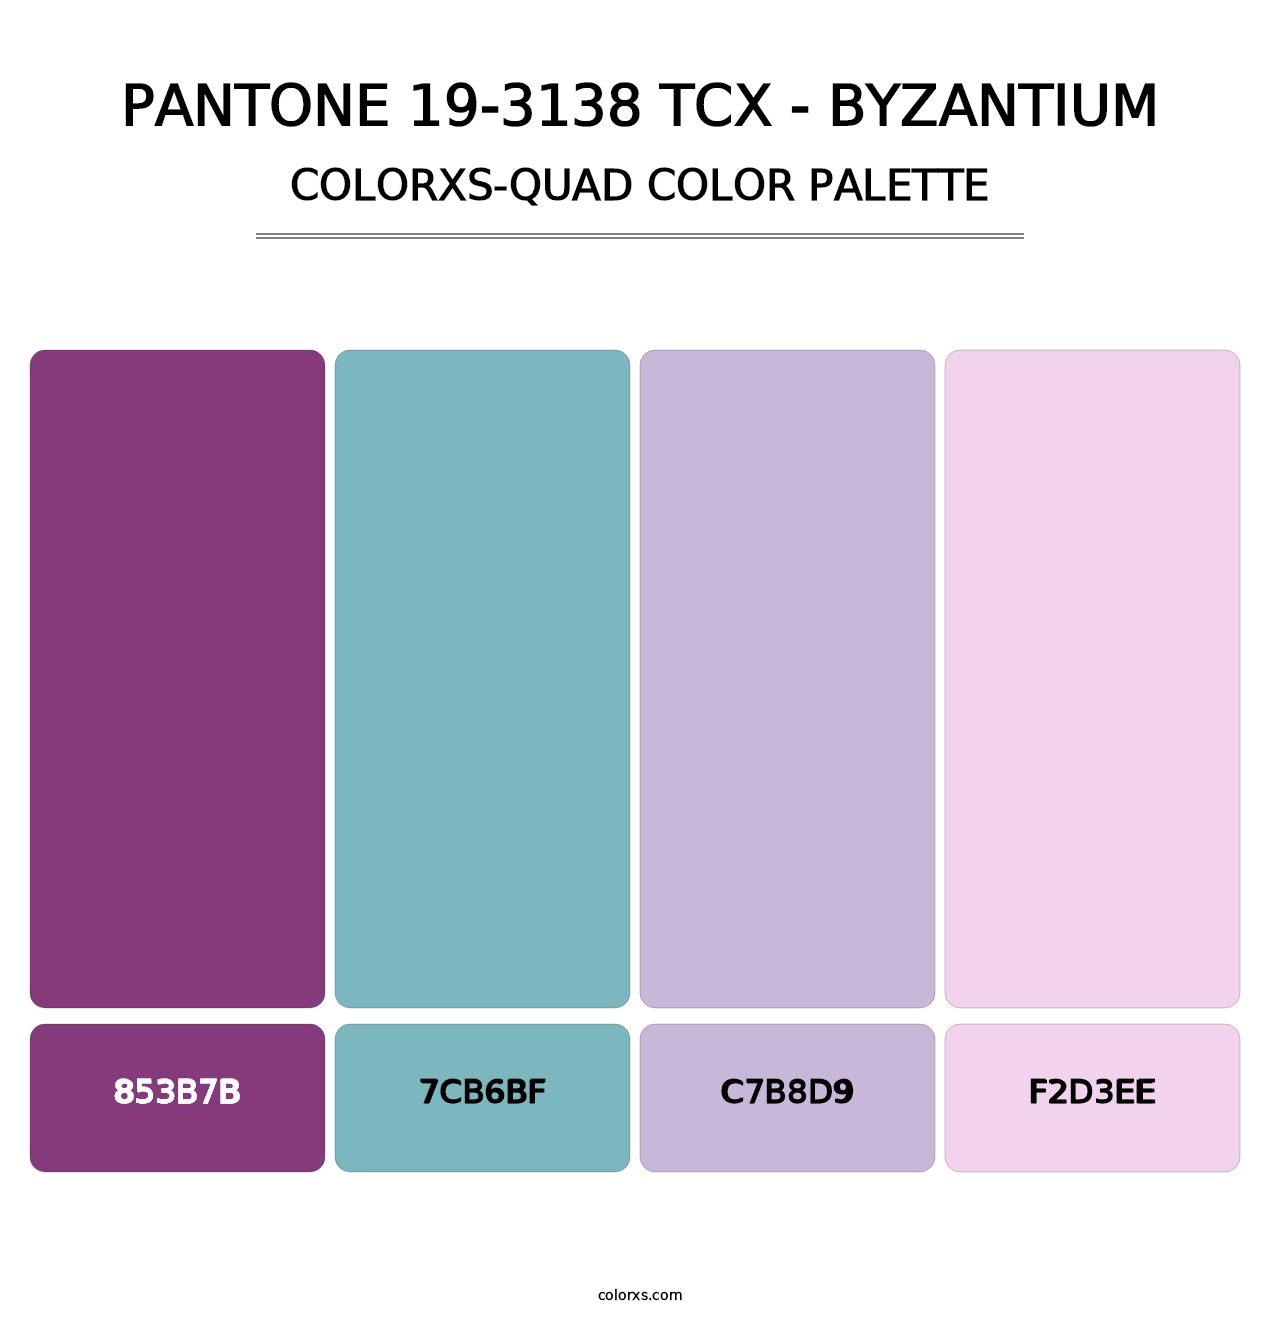 PANTONE 19-3138 TCX - Byzantium - Colorxs Quad Palette